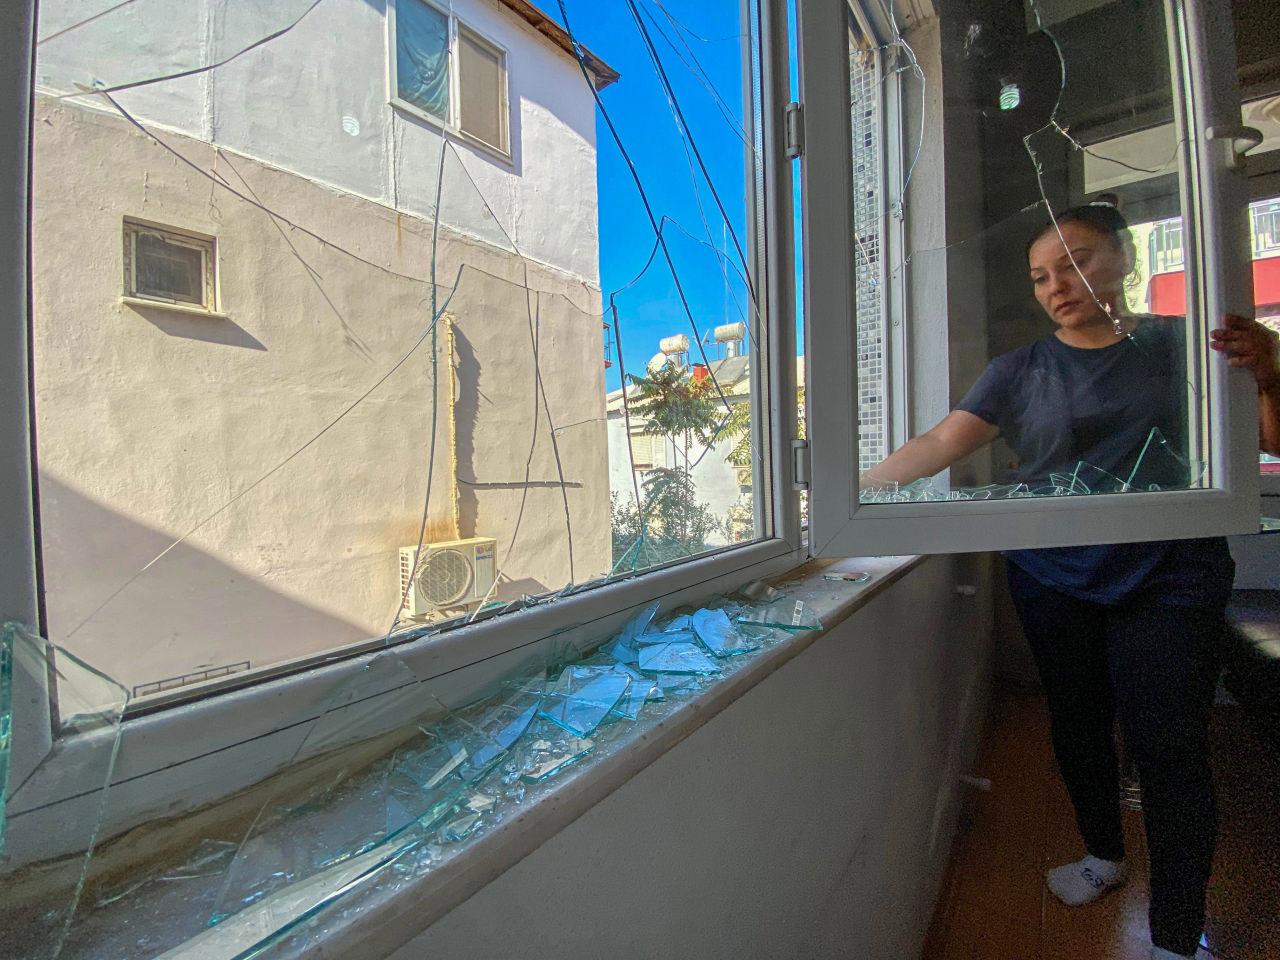 Engelli oğlu ile yaşayan kiracısını tahliye etmek istedi: Camlarını kırdı